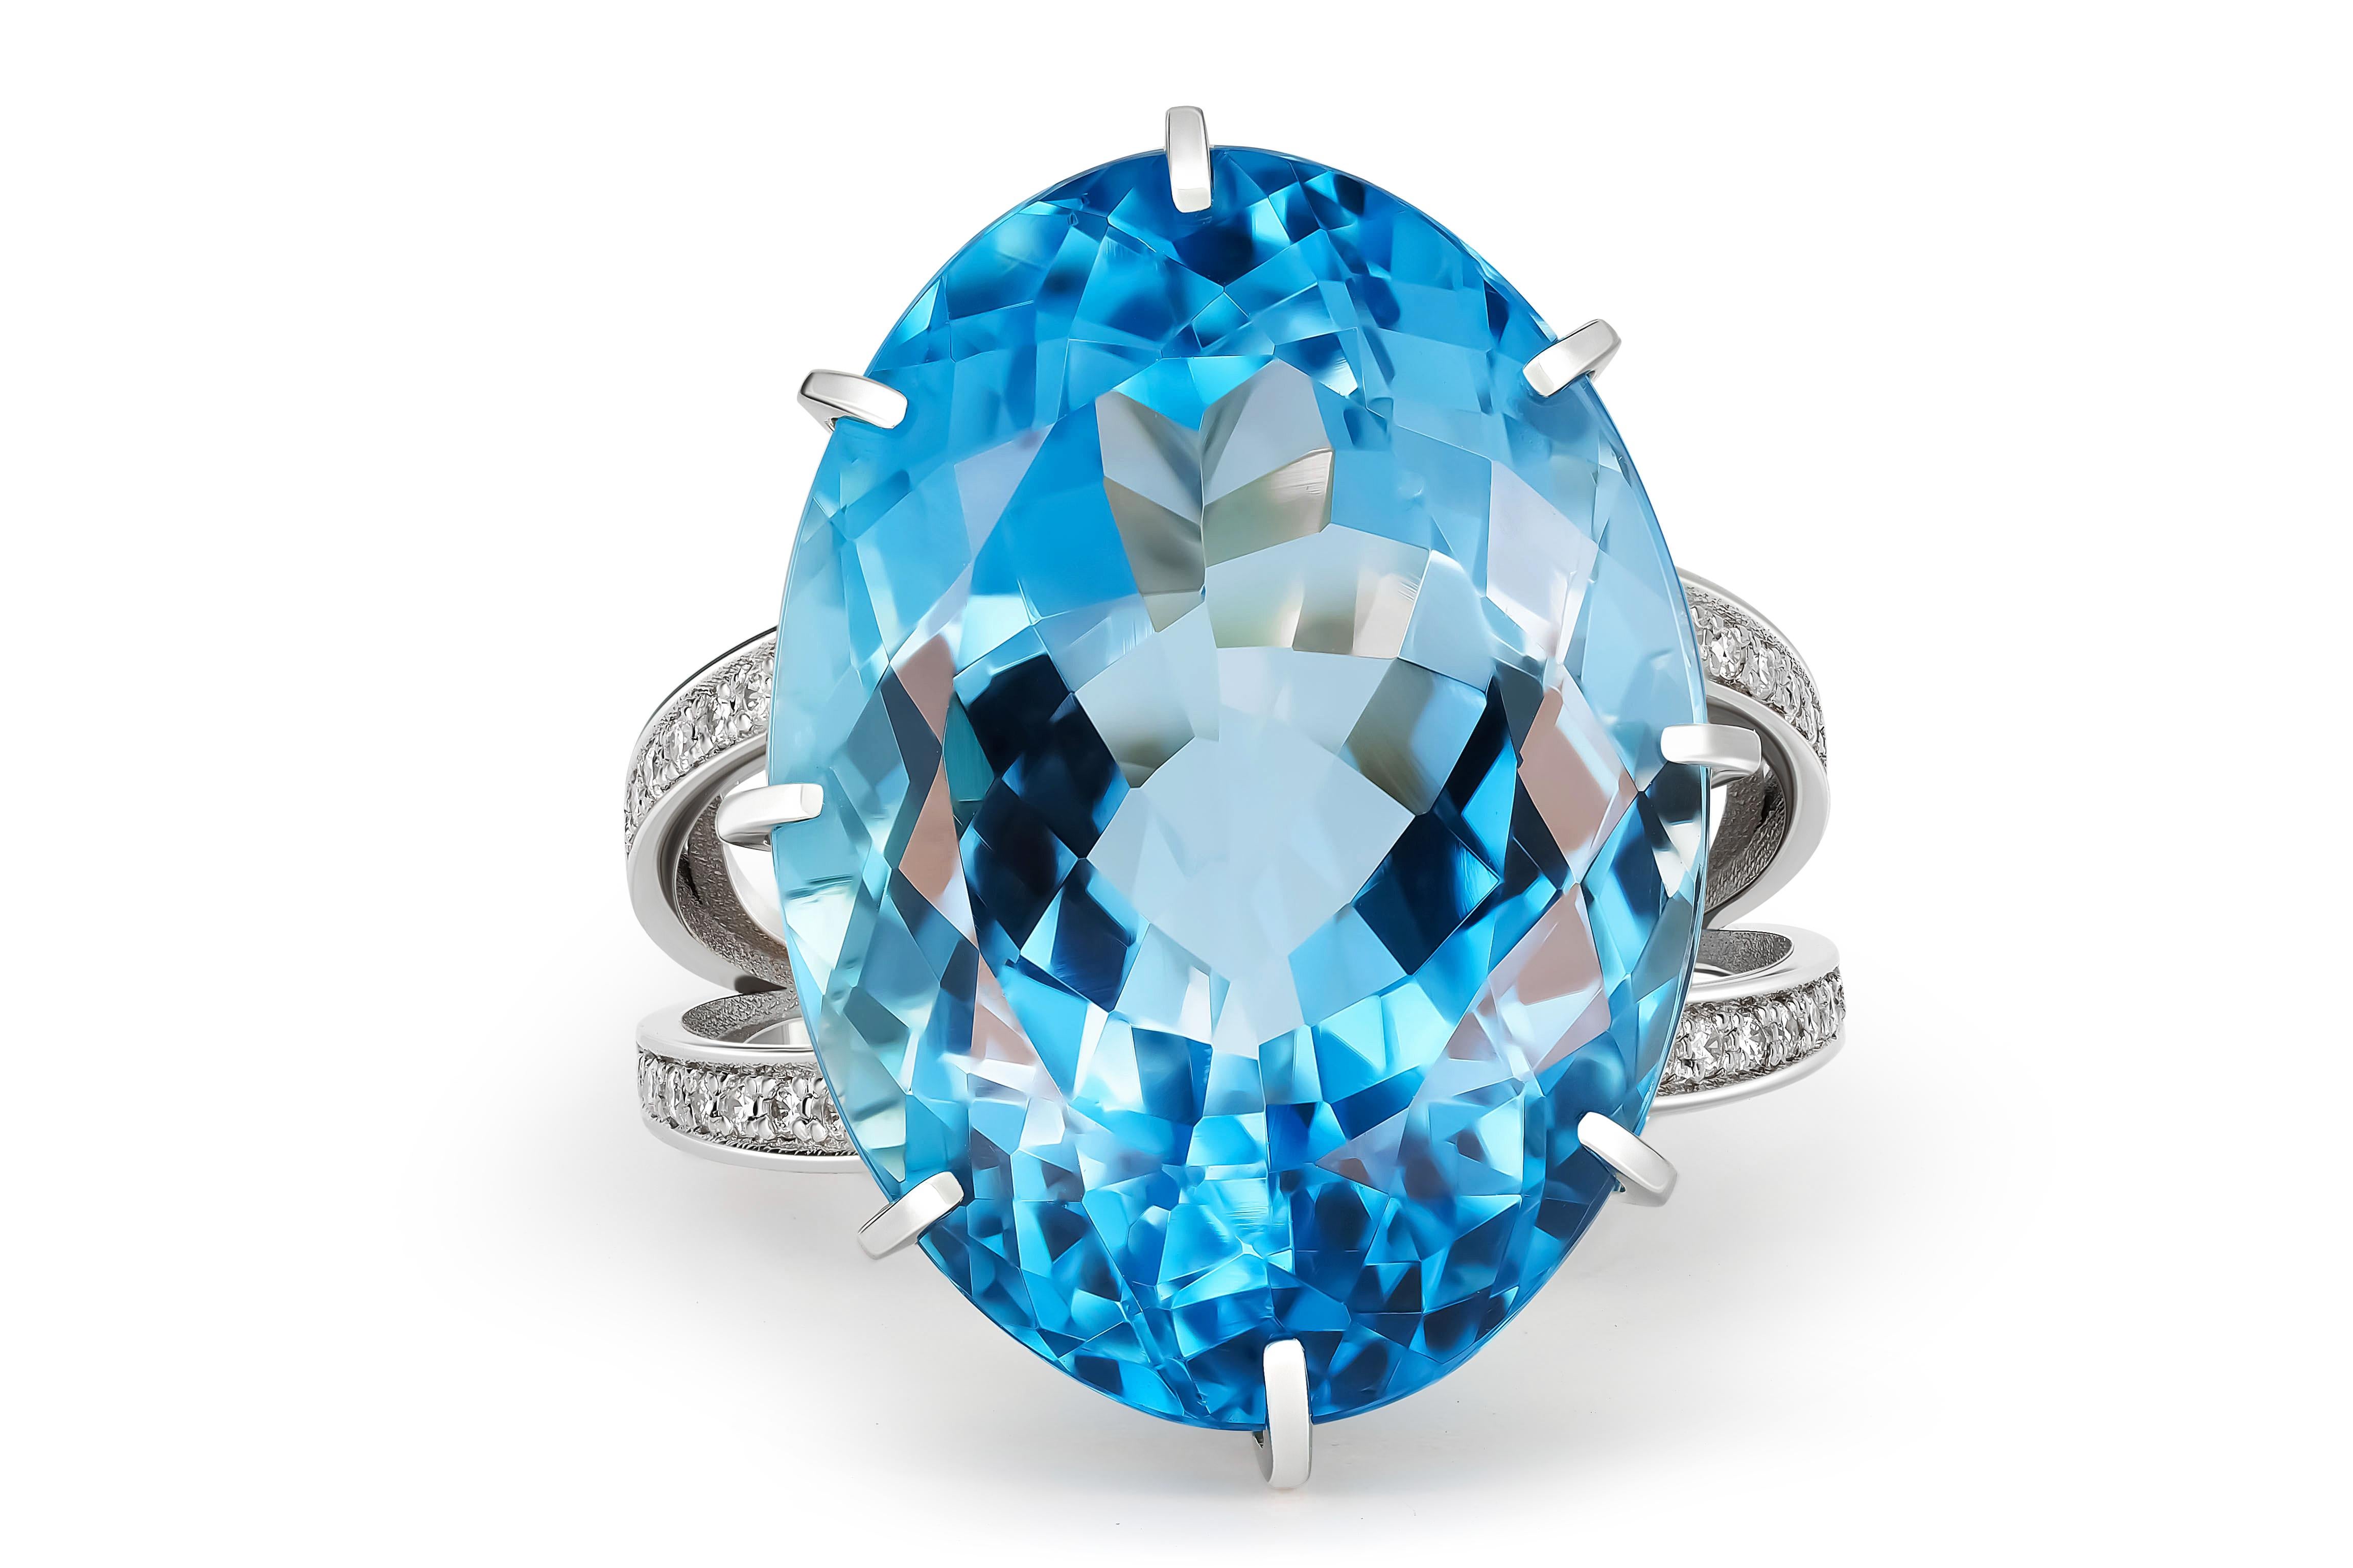 Massiver Ring mit Topas und Diamanten
14 Karat Gold
Gewicht: 10,1 g.
Set mit Topas , Farbe - blau
Ovaler Schliff, ca. 26 ct. (21,5x15,5x 10,3 mm)
Klarheit: Transparent mit Einschlüssen
Andere Steine:
Diamanten - runder Brillantschliff, G/VS, 32 x